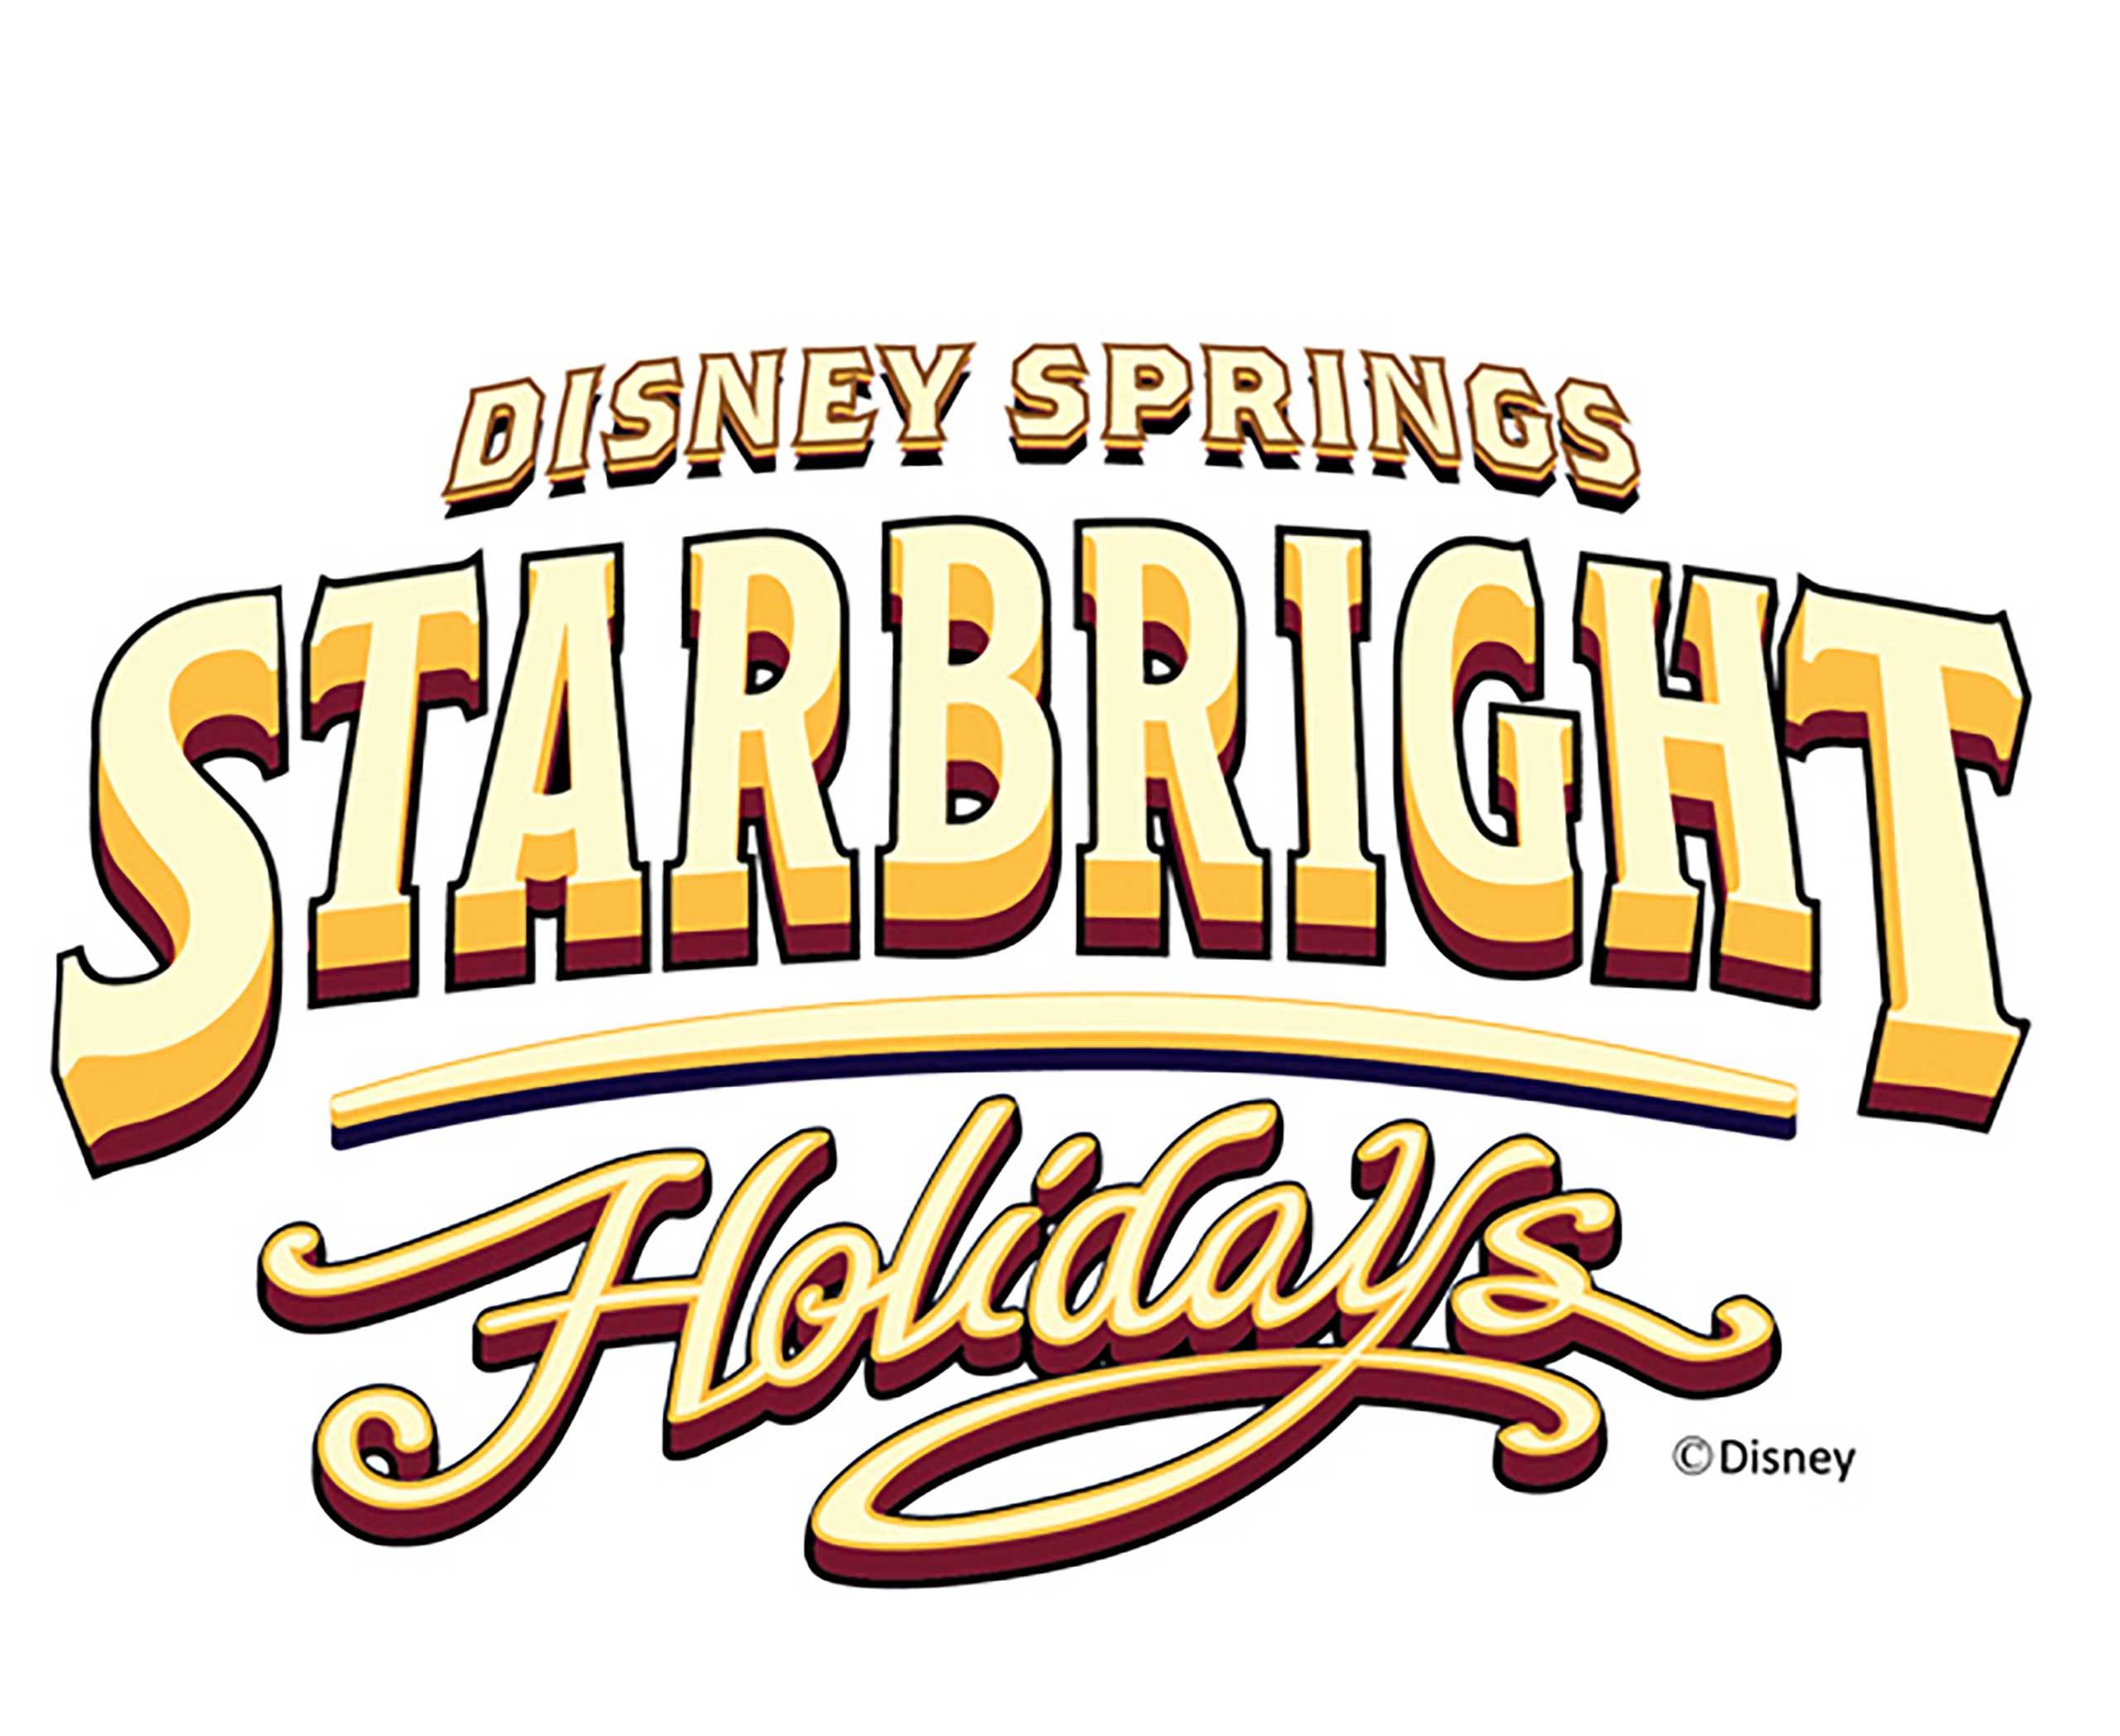 Starbright Holidays logo